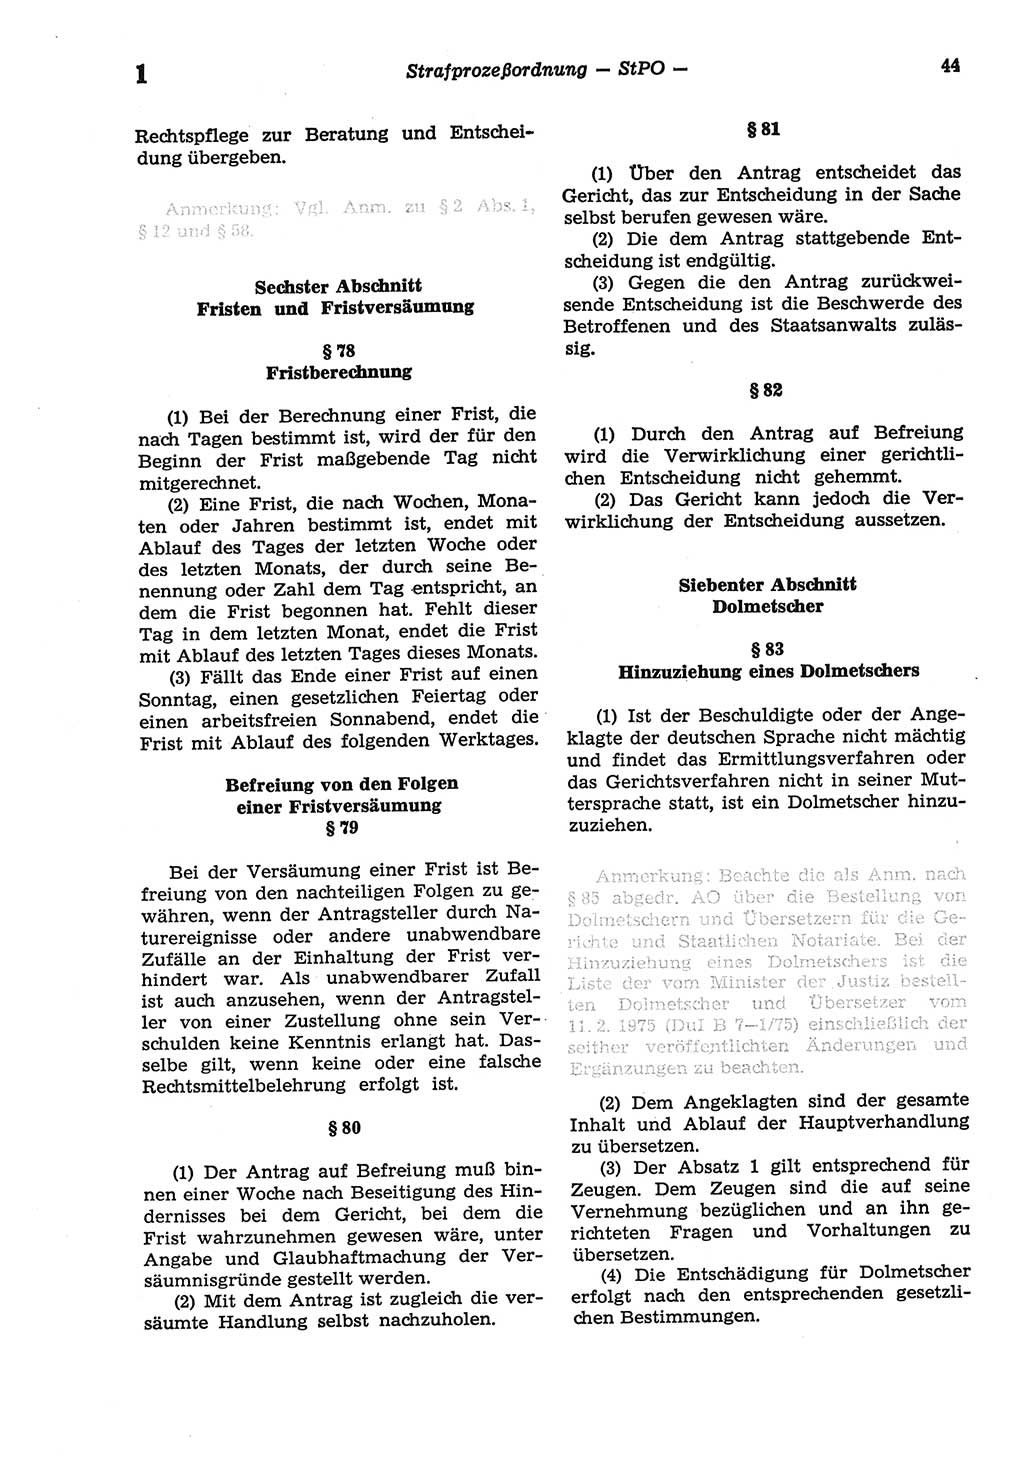 Strafprozeßordnung (StPO) der Deutschen Demokratischen Republik (DDR) sowie angrenzende Gesetze und Bestimmungen 1977, Seite 44 (StPO DDR Ges. Best. 1977, S. 44)